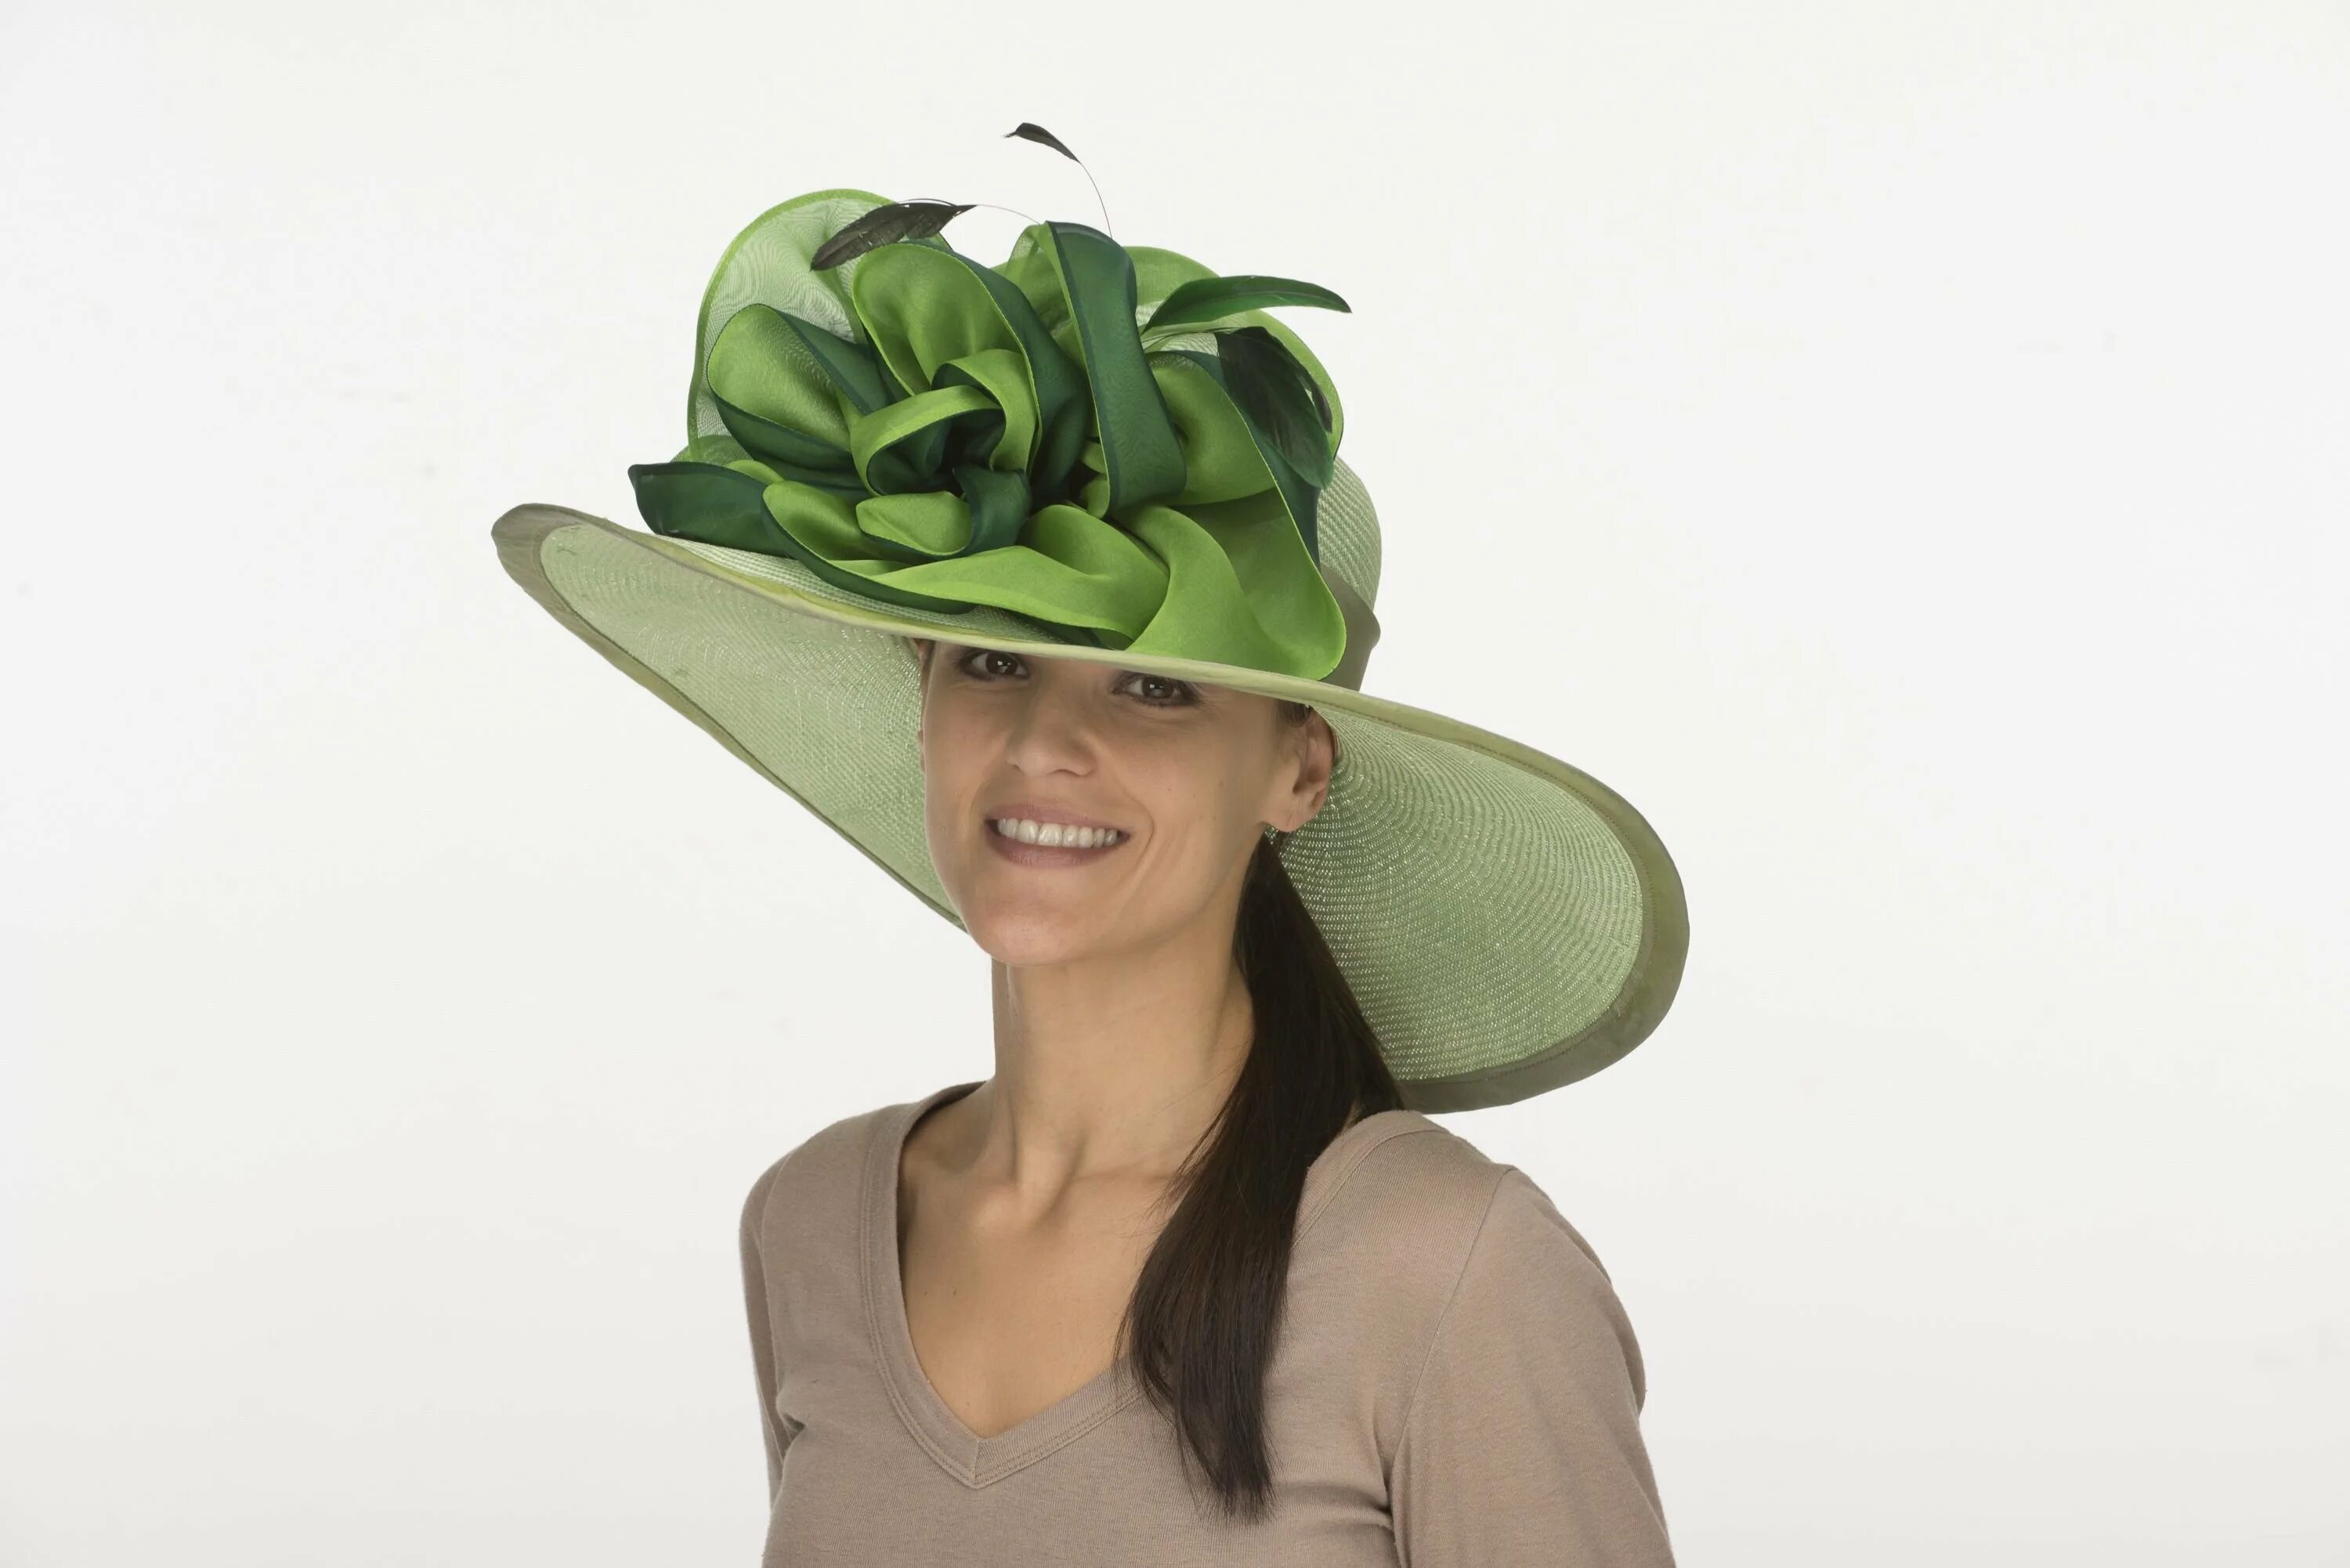 She hat got. Шляпка женская зеленая. Экстравагантные шляпы женские. Стильная зеленая шляпка. Зеленая женская шляпа.